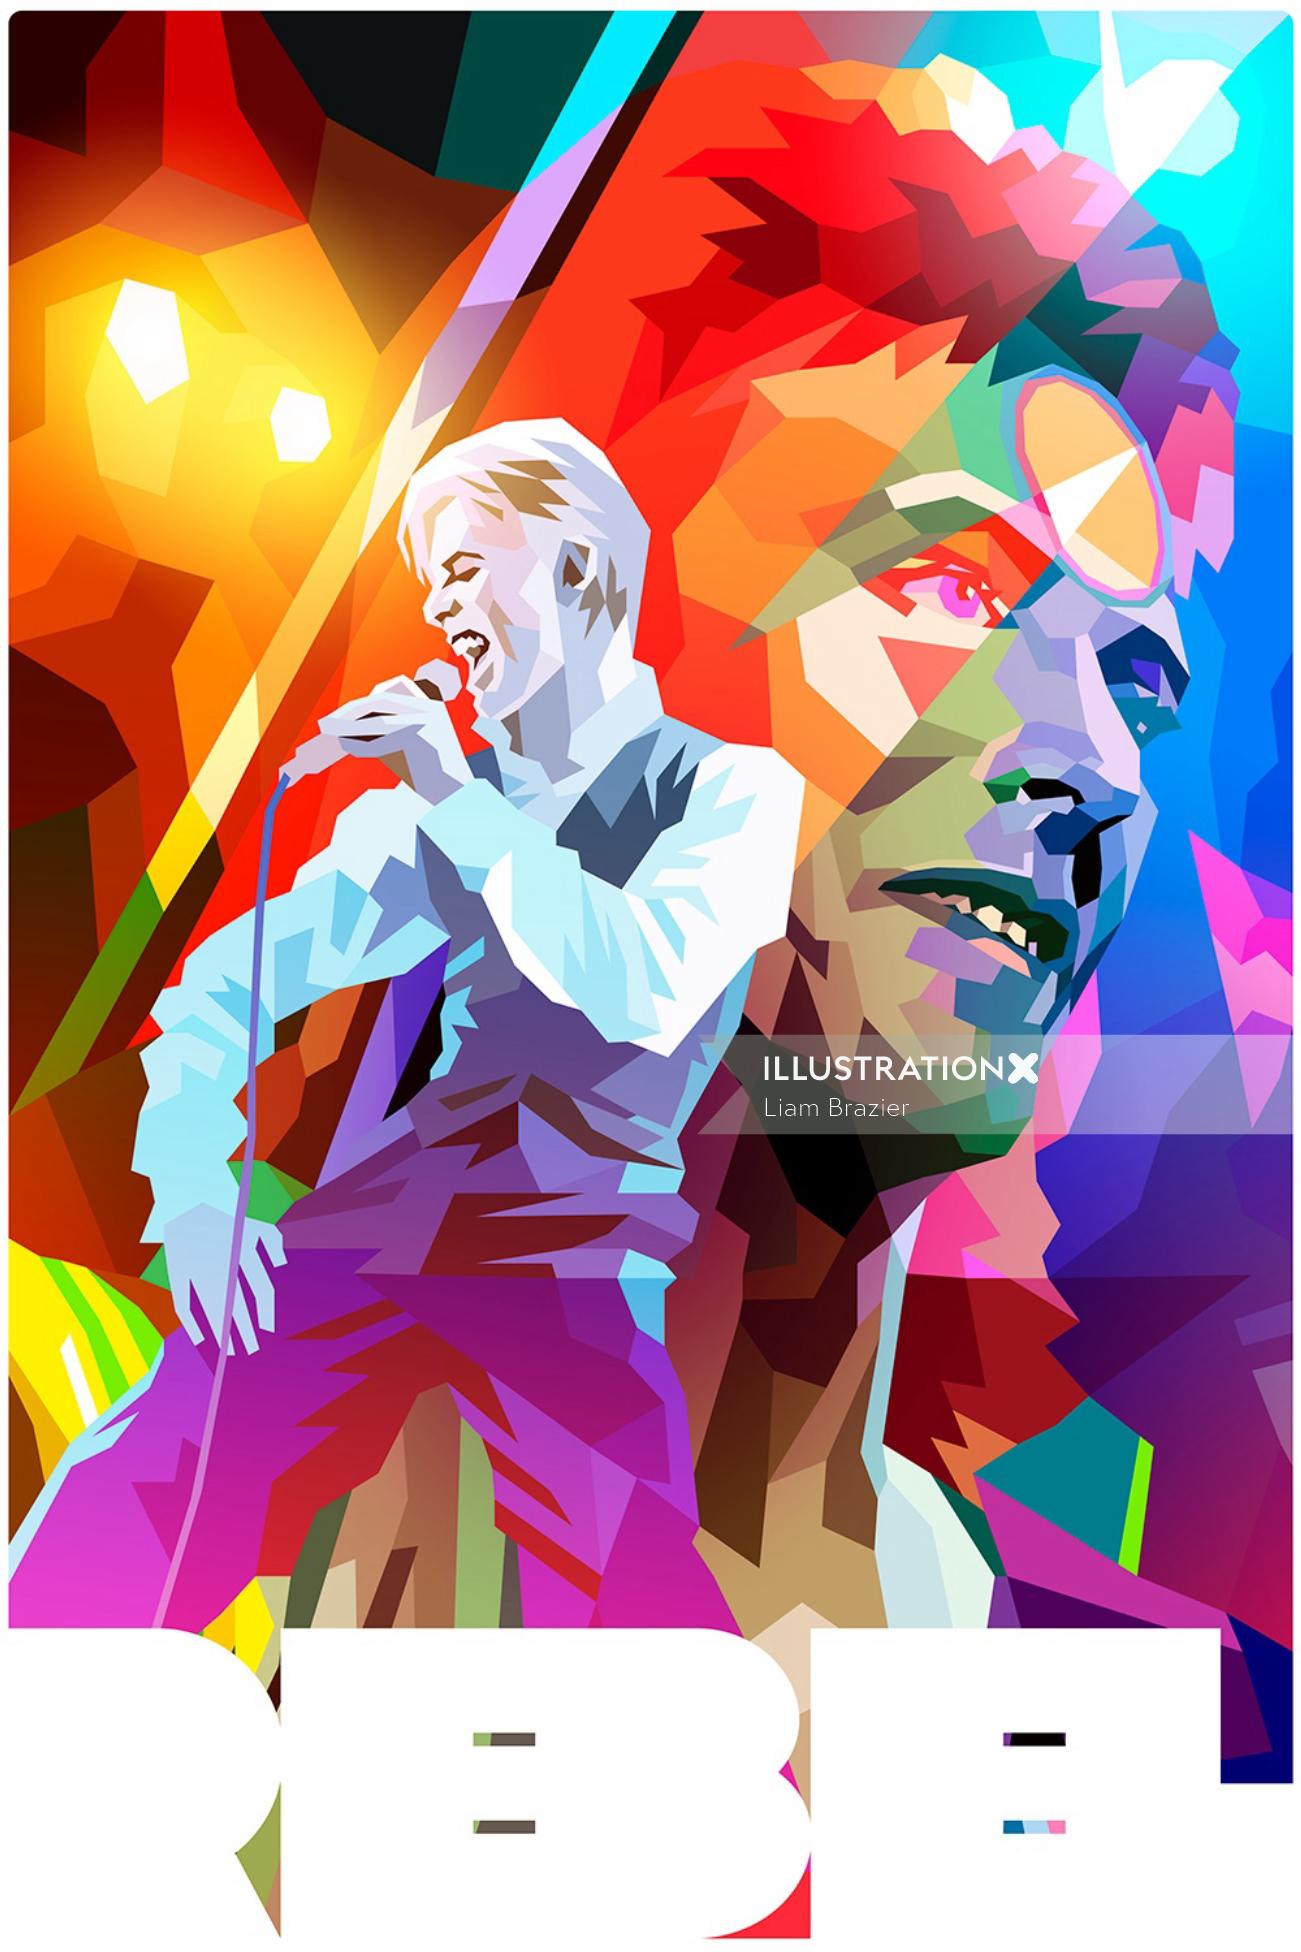 Digital illustration of Man singing
